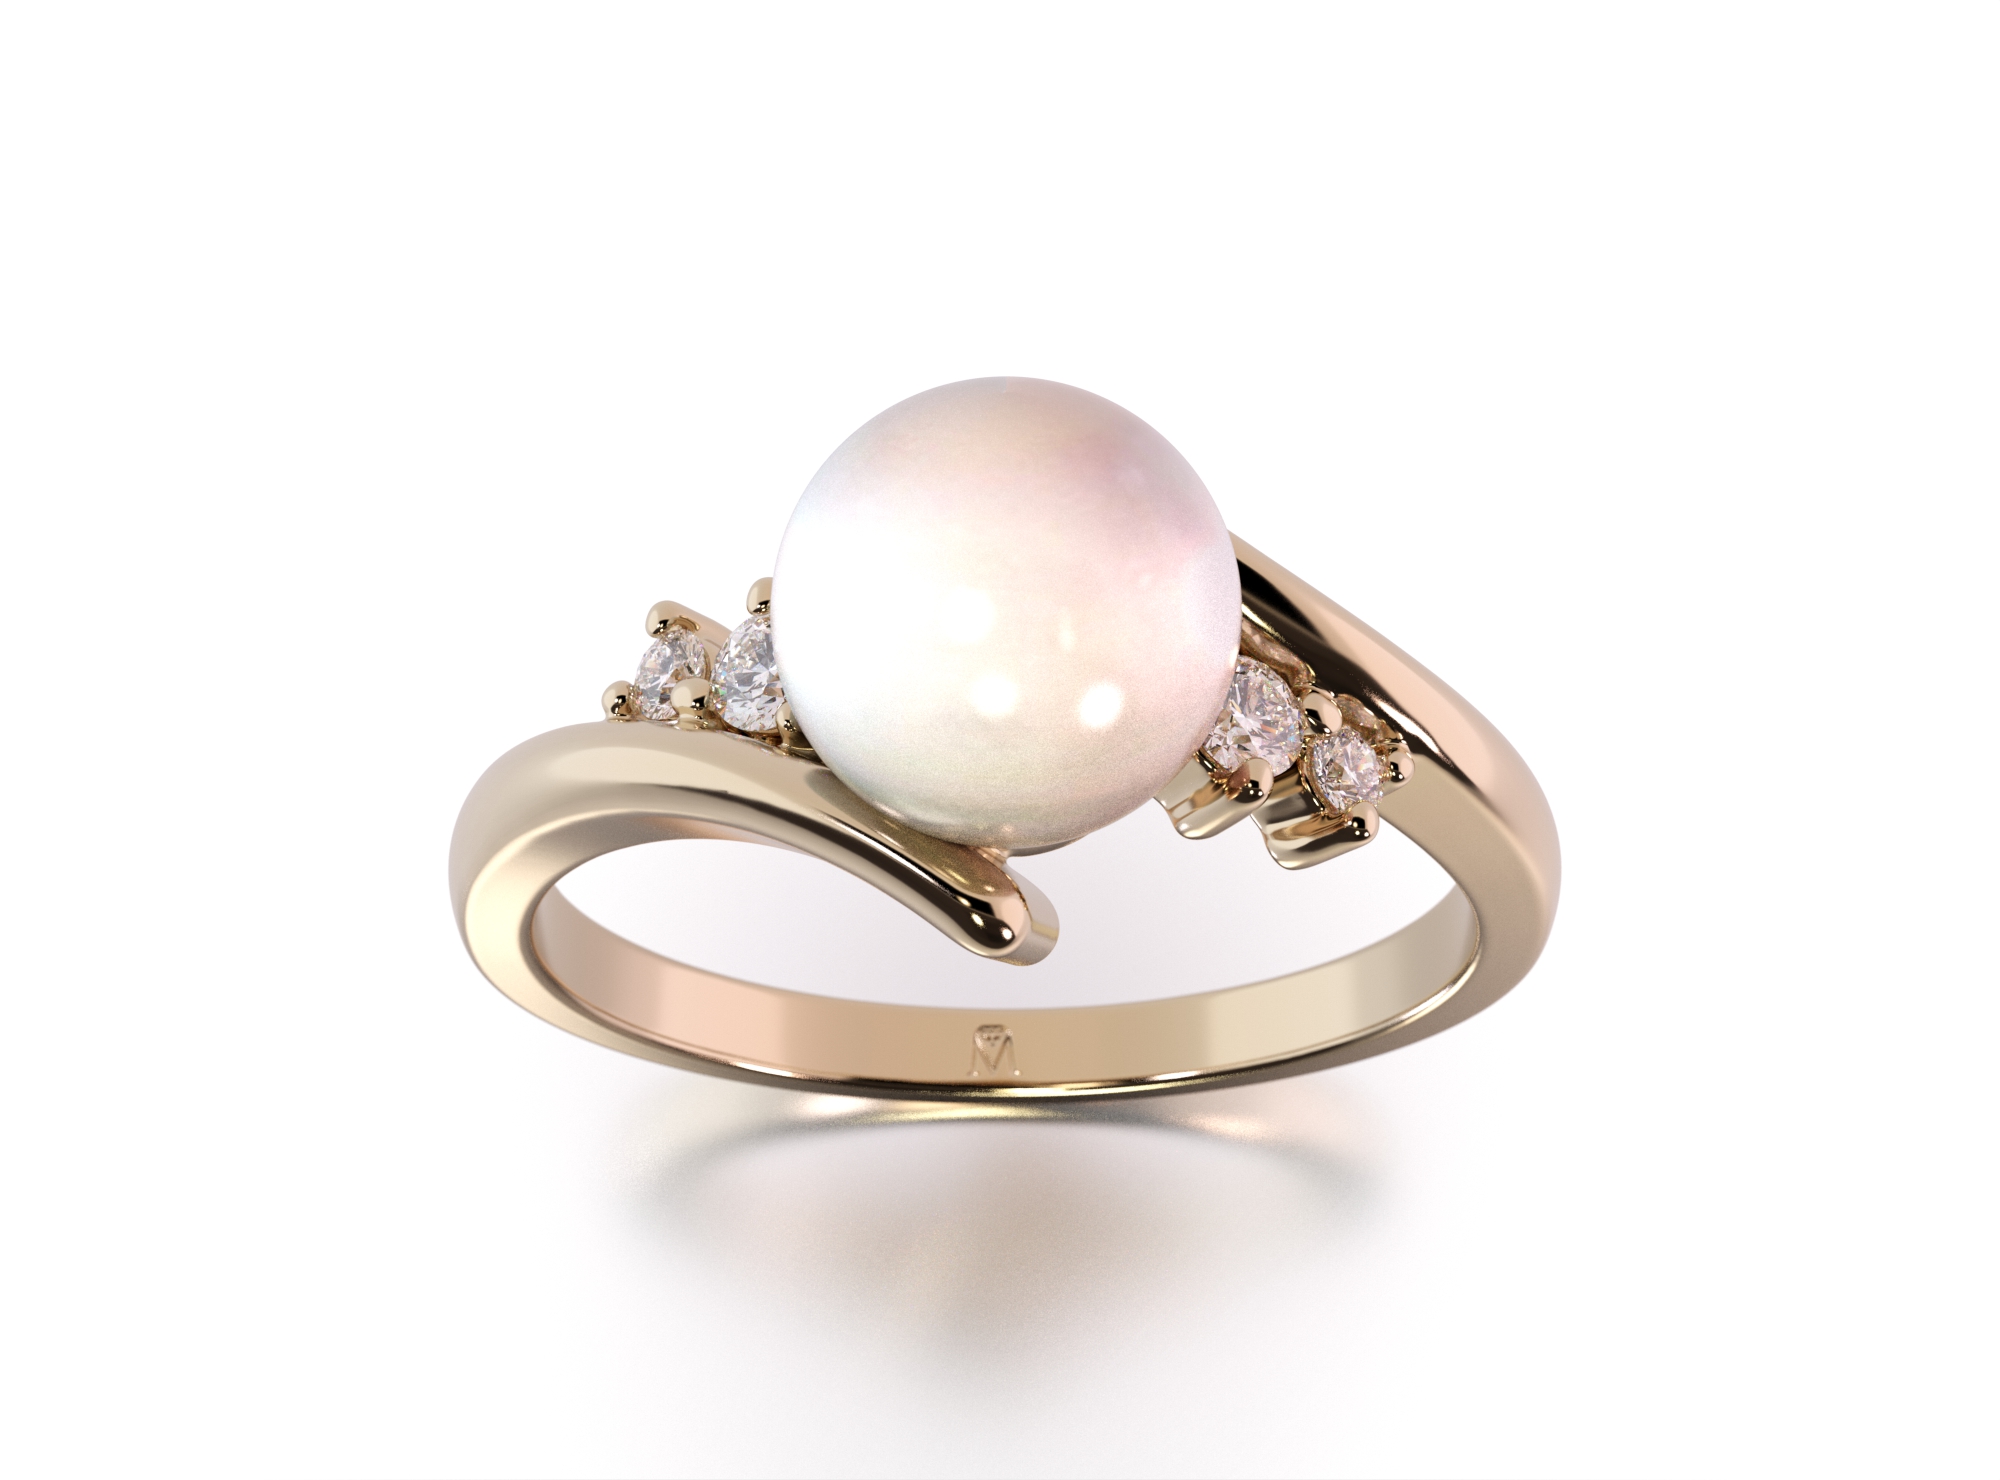 Cudowny pierścionek z perłą i diamentami w próbie złota 585